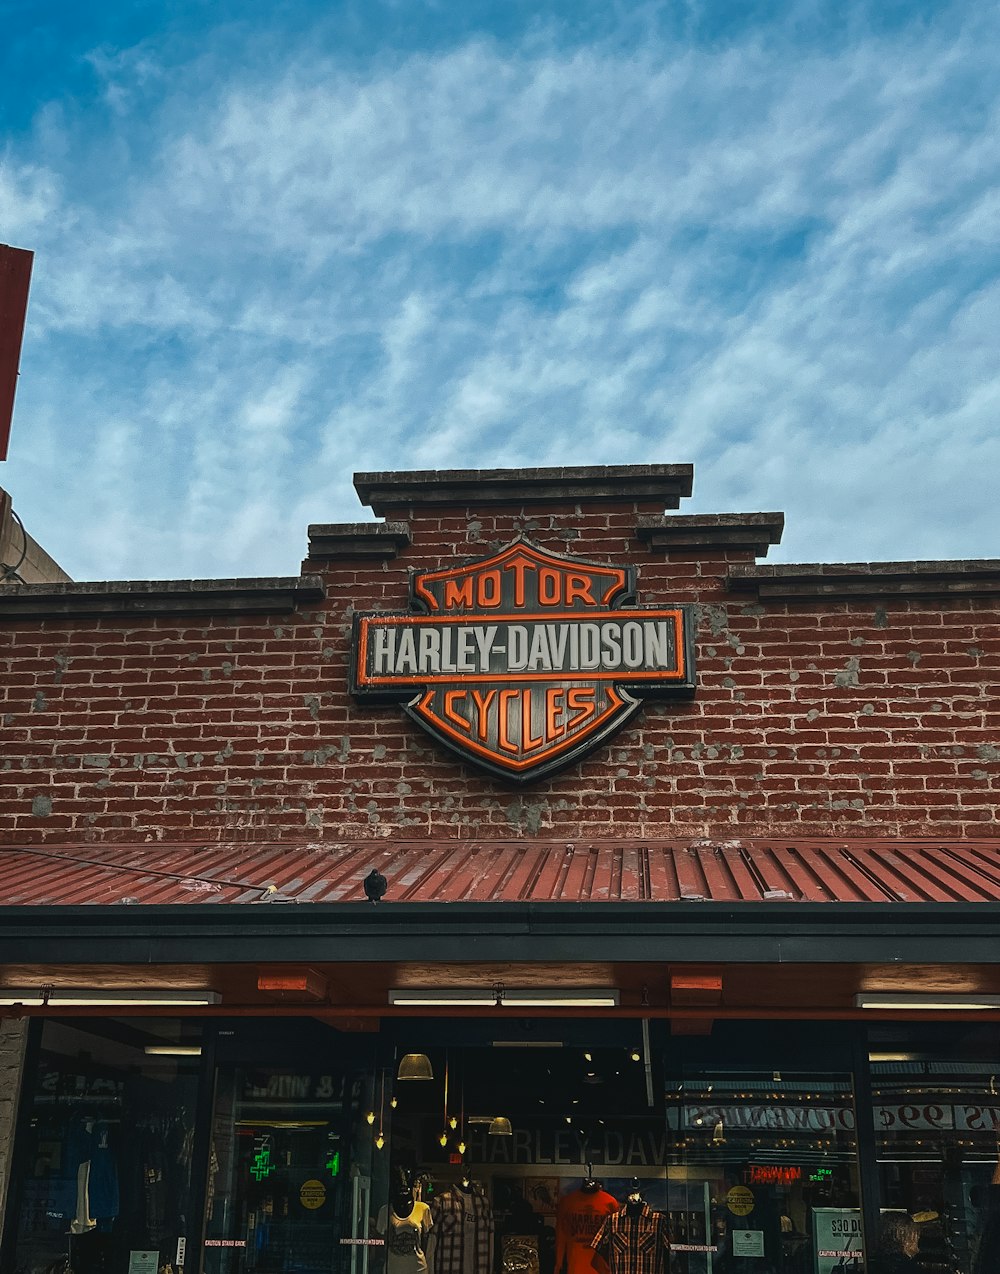 Un edificio de ladrillo con un letrero que dice Harley Davidson Cycles